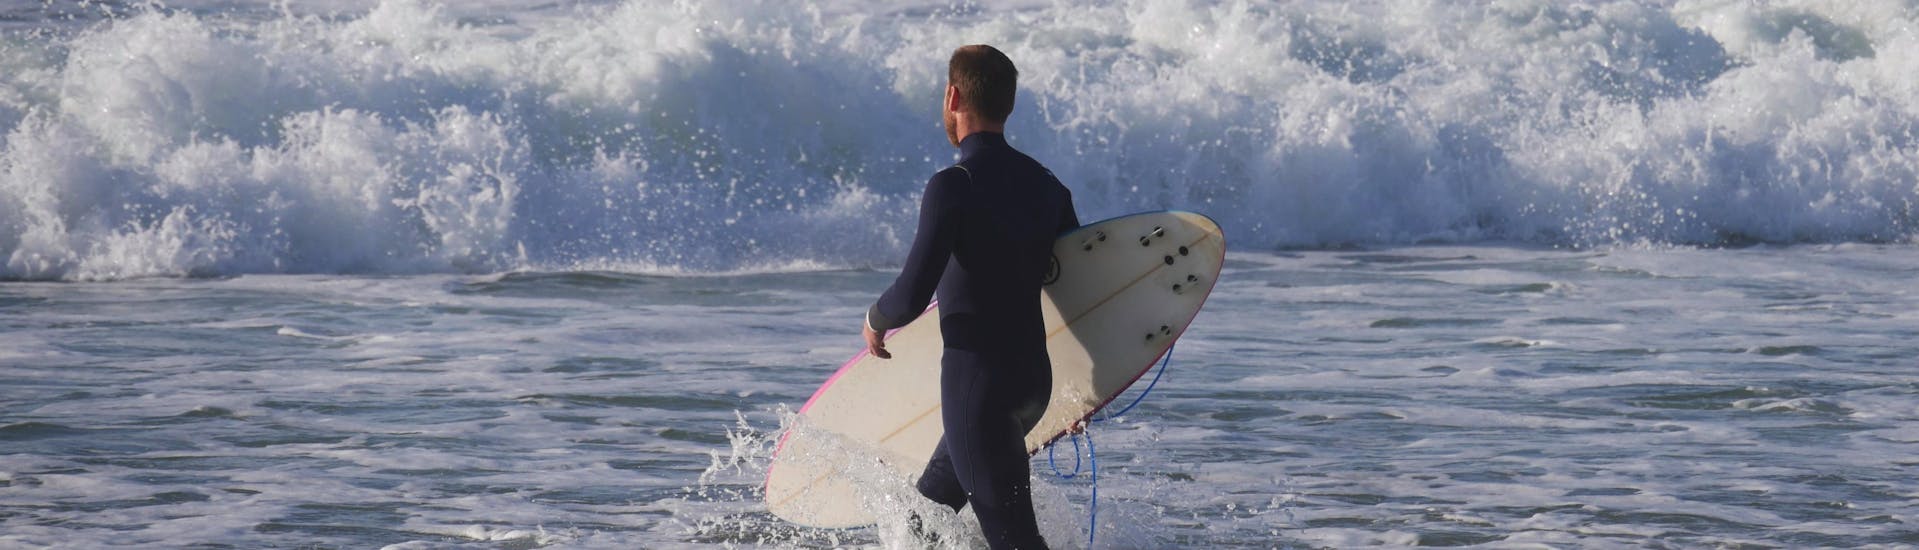 Ein Surfer trägt beim Surfen in Mimizan sein Brett ins Meer.